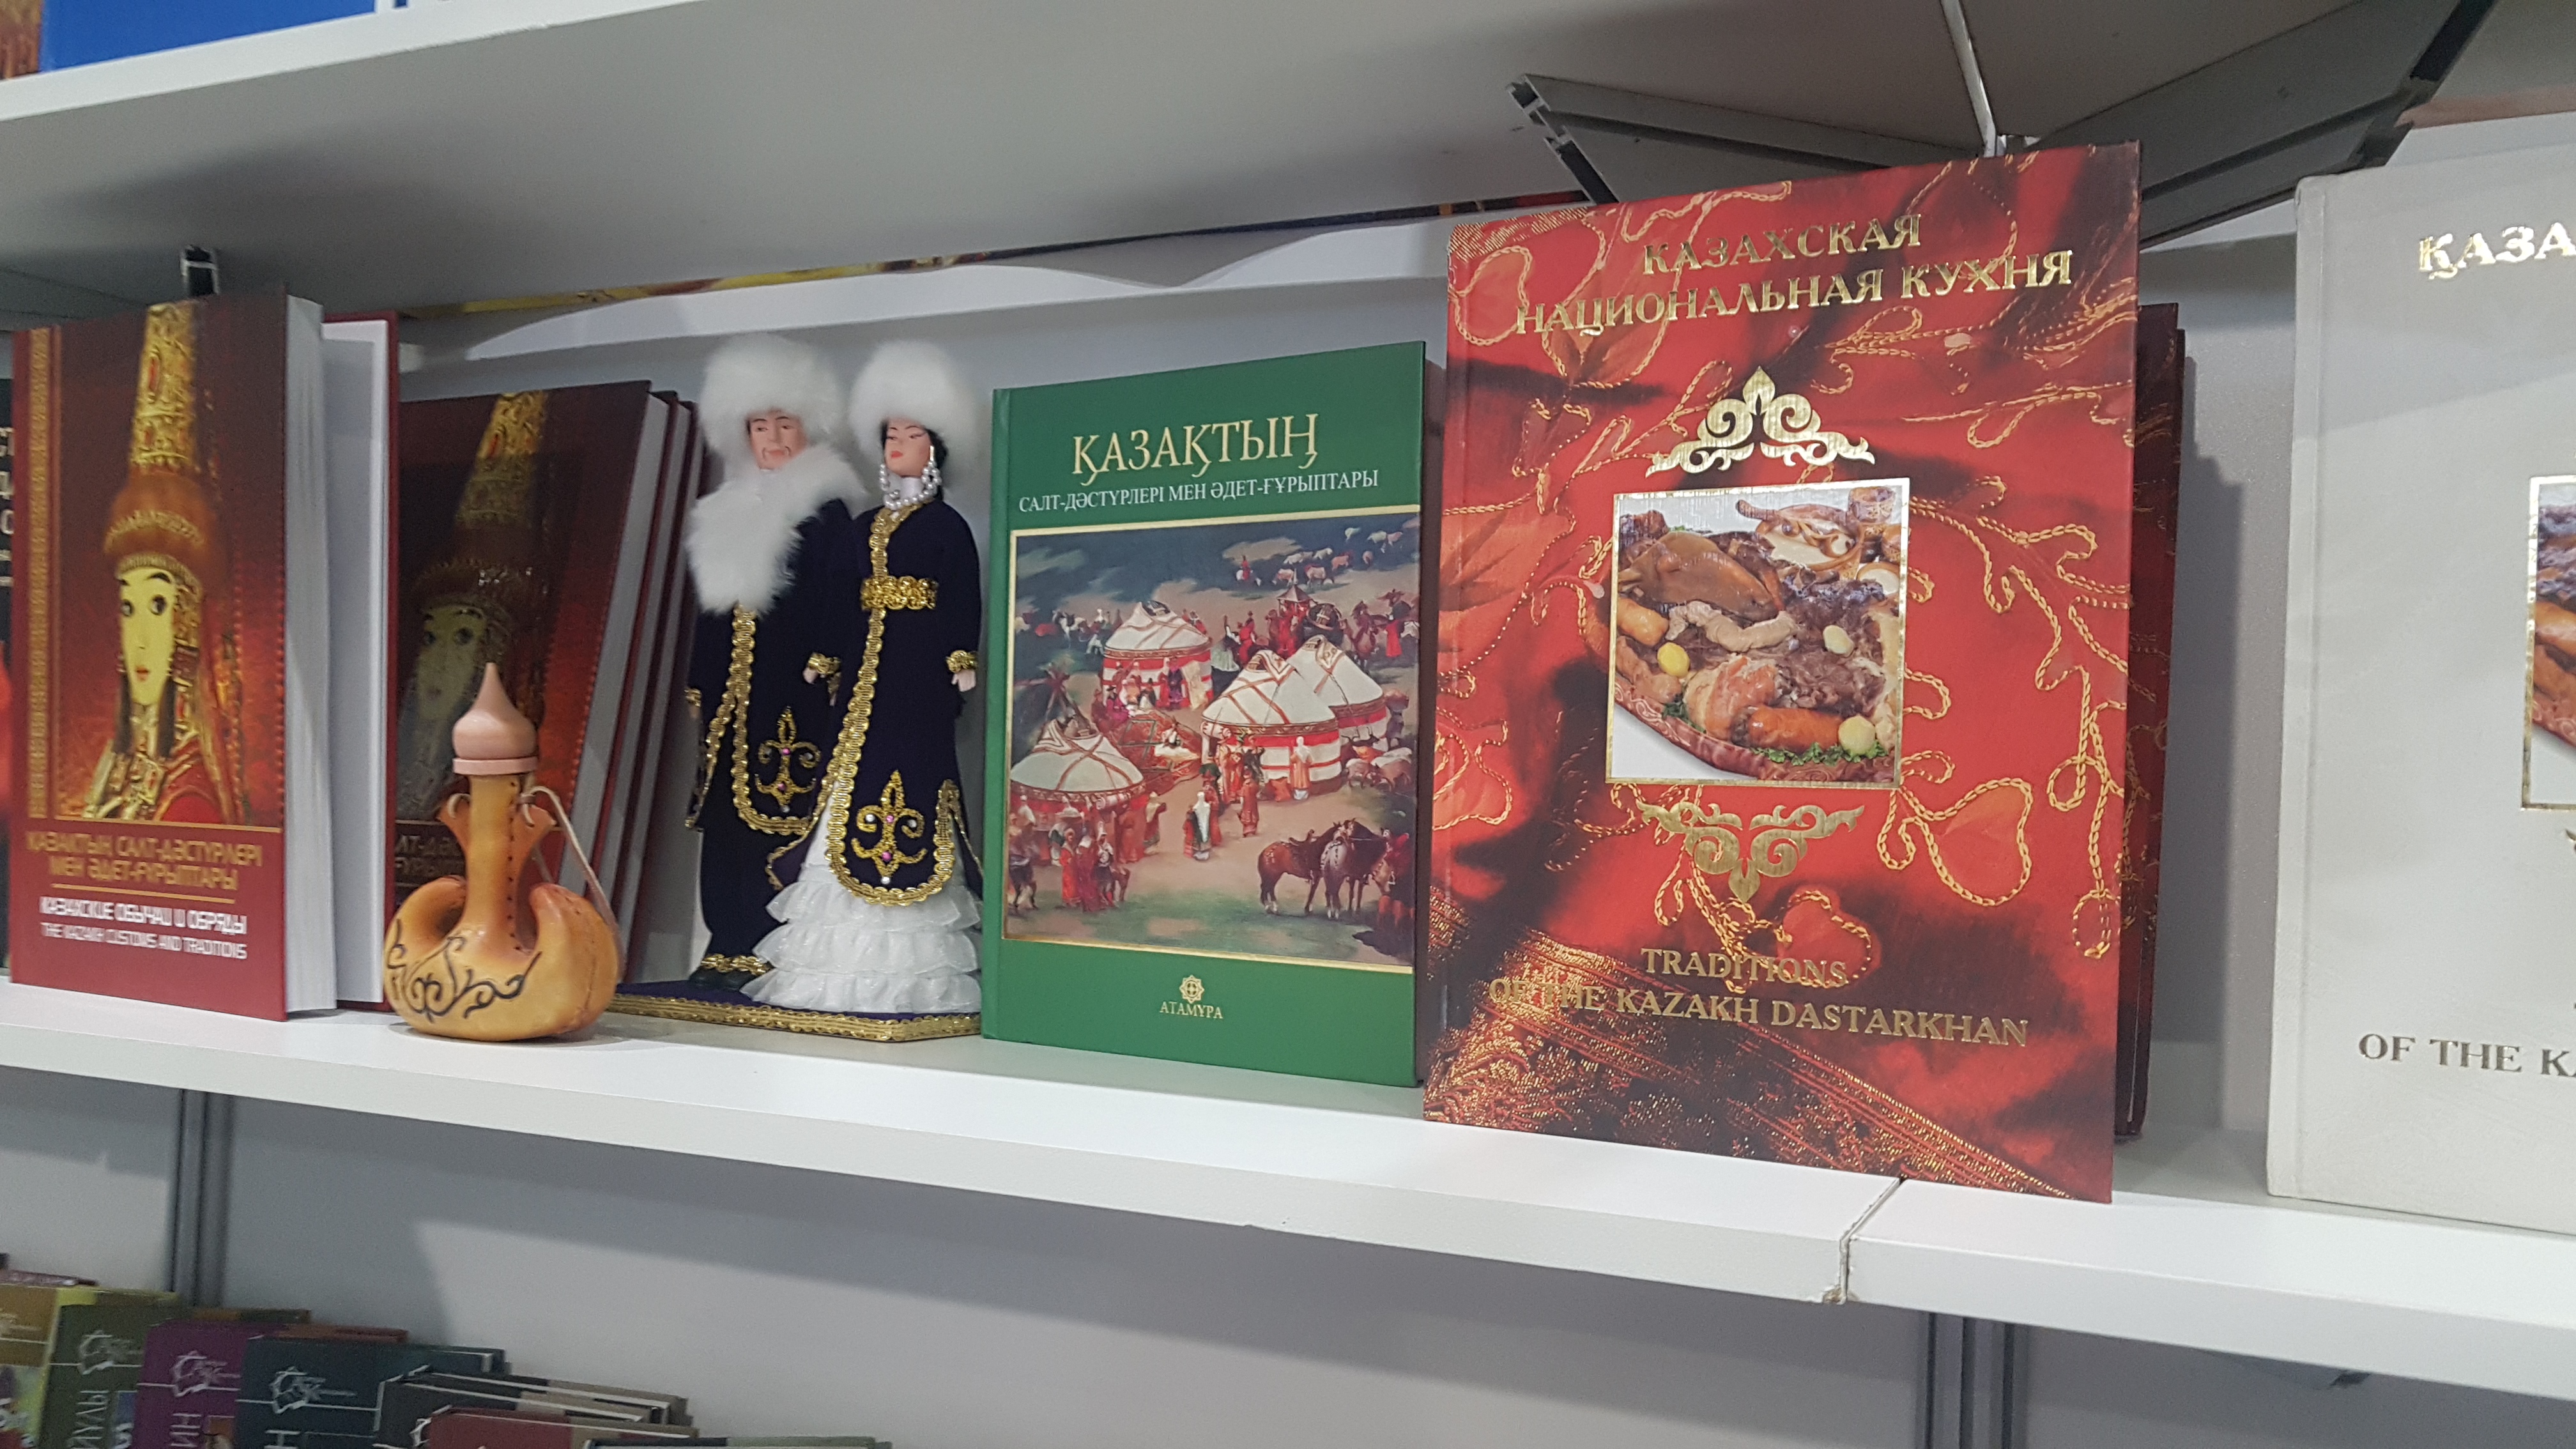 서점에서 세 가지 언어로 팔리고 있는 전통, 풍습에 관한 책들 - 사진 출처 : 통신원 촬영